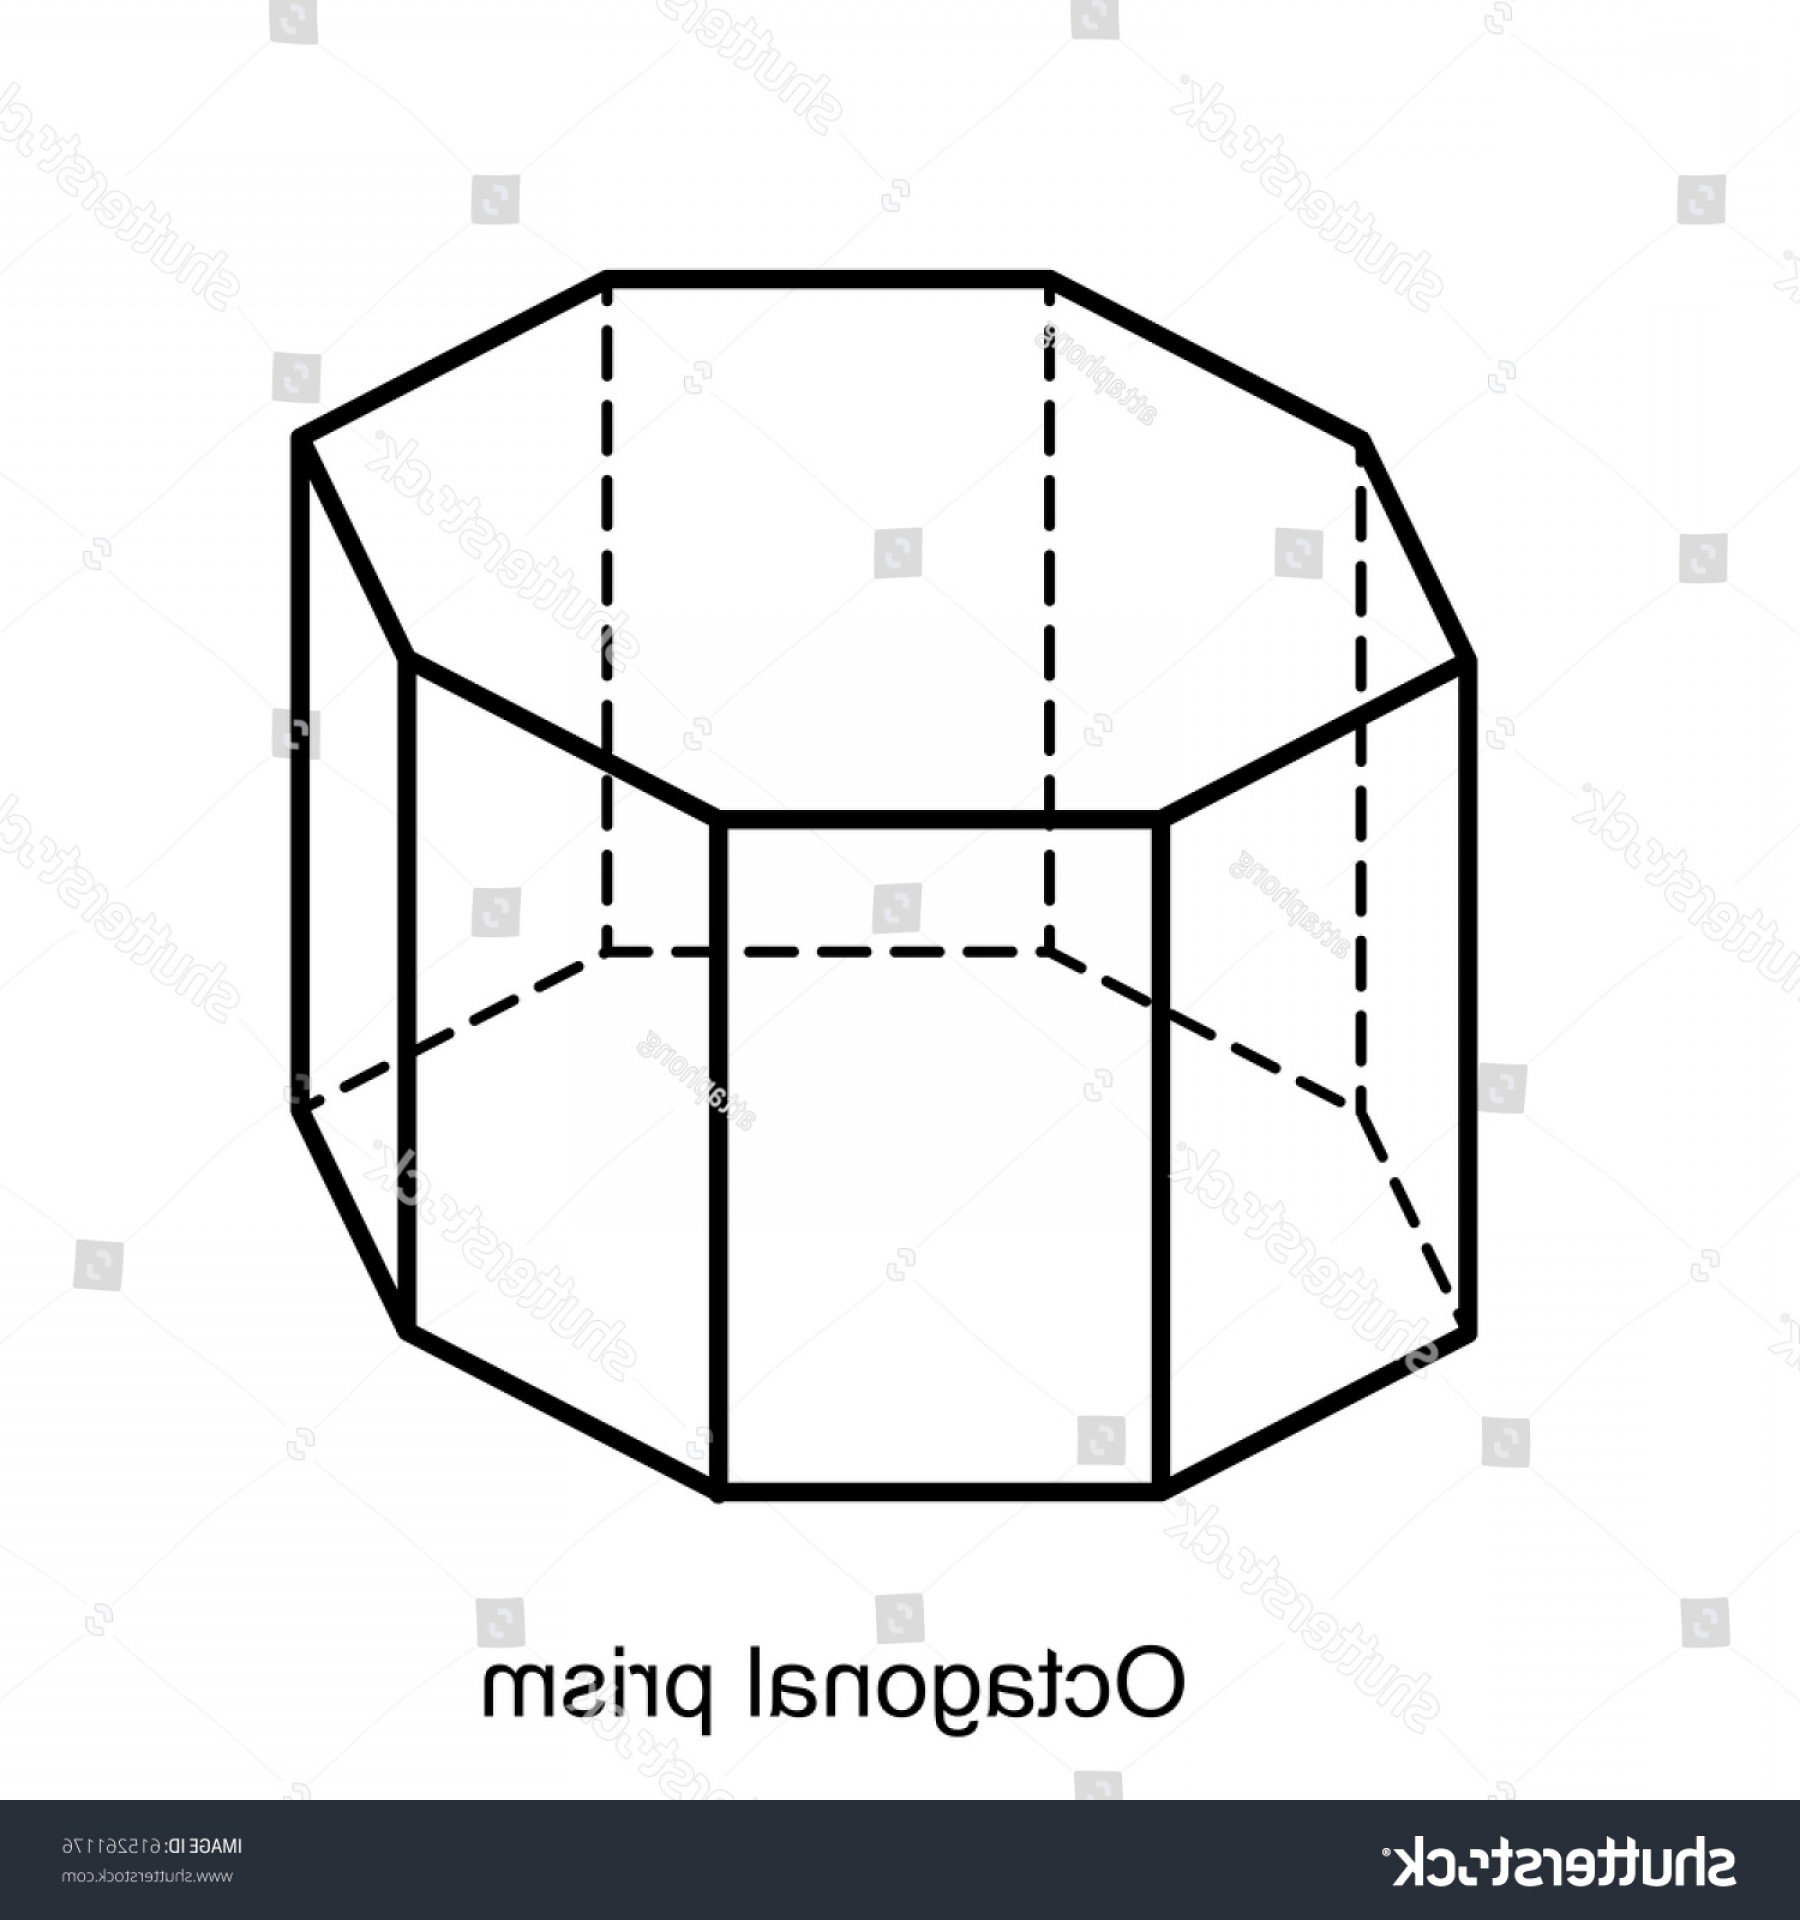 Изобразить шестиугольную призму. Правильная восьмиугольная Призма. Правильная восьмигранная Призма это. Правильная восьмиугольная Призма чертеж. Правильная 8 угольная Призма.